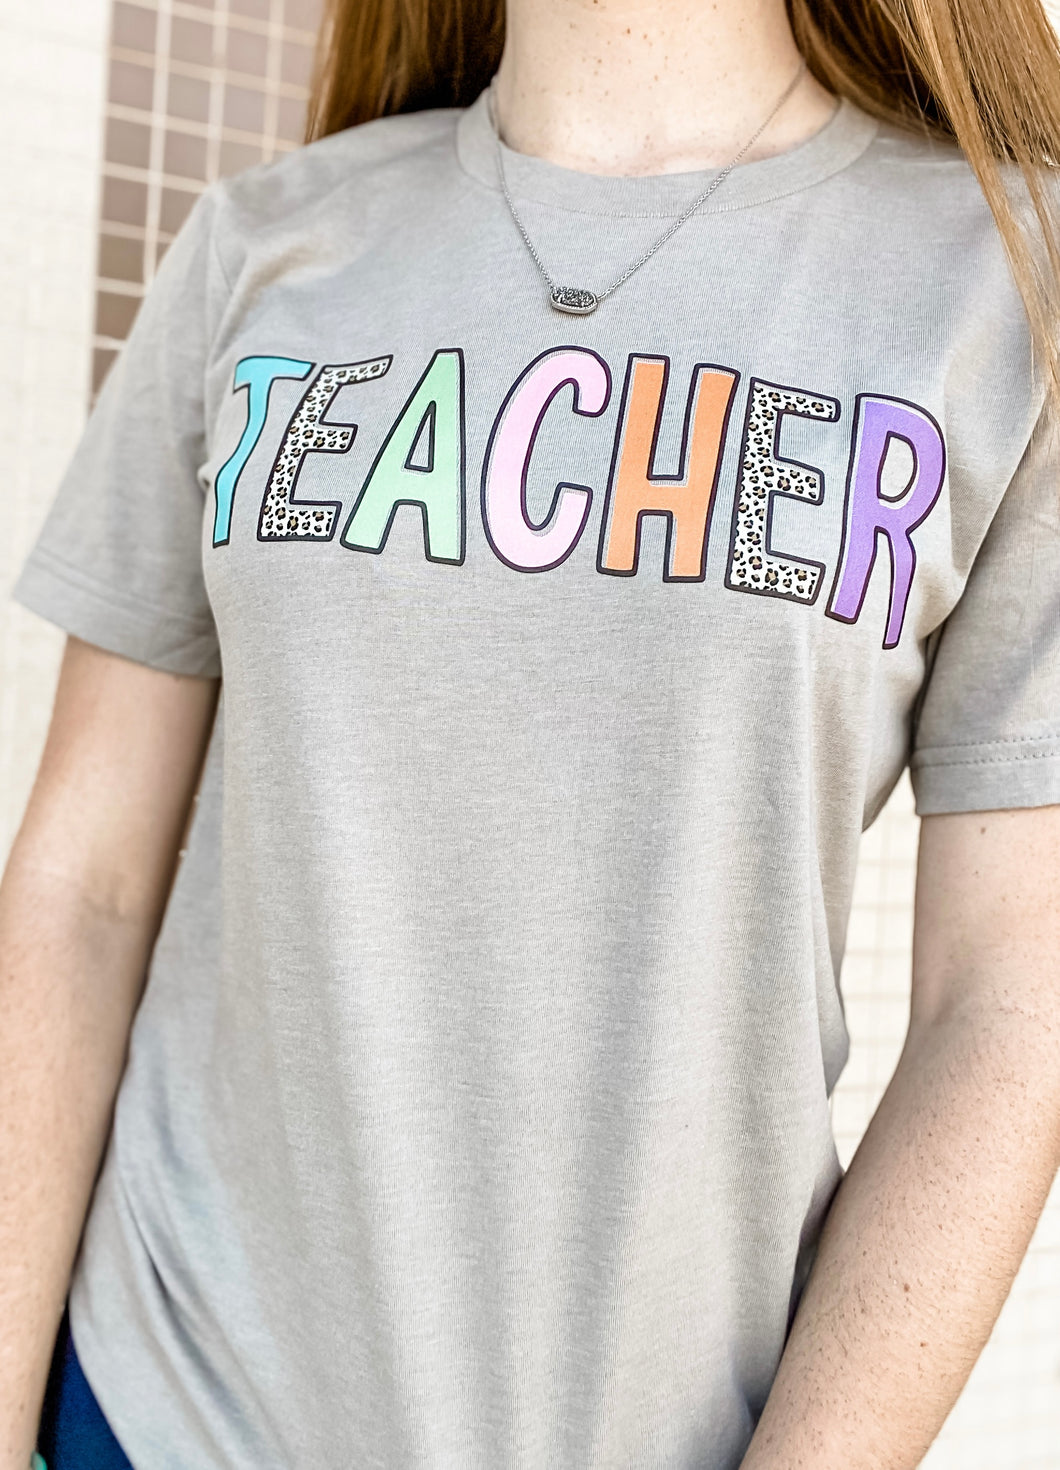 Teacher t-shirt